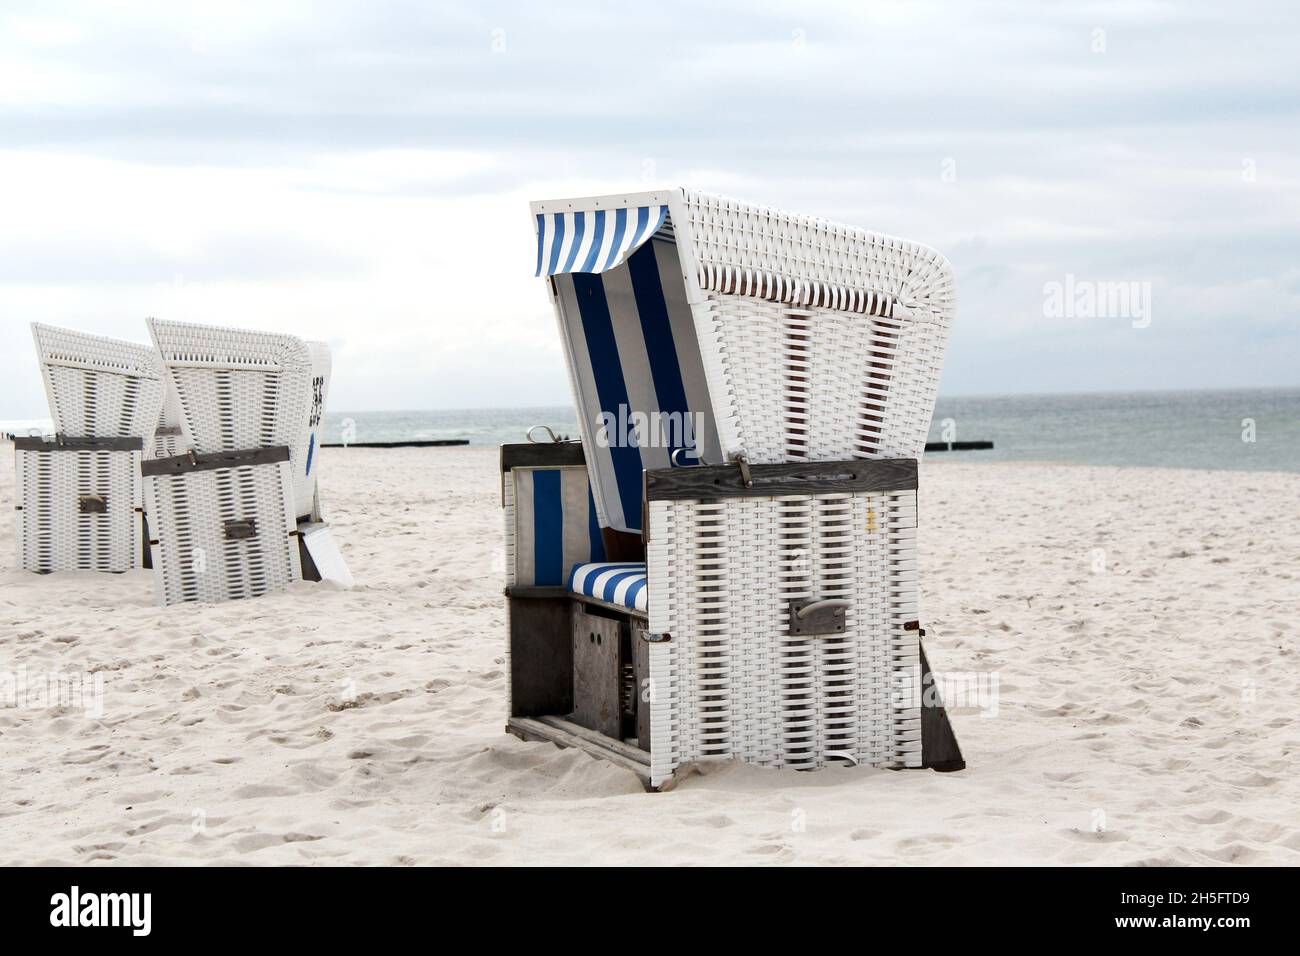 Mehrere weiße, geflochtene Strandkörbe mit blau weißen Streifen am leeren Strand von Sylt, Deutschland. Stock Photo